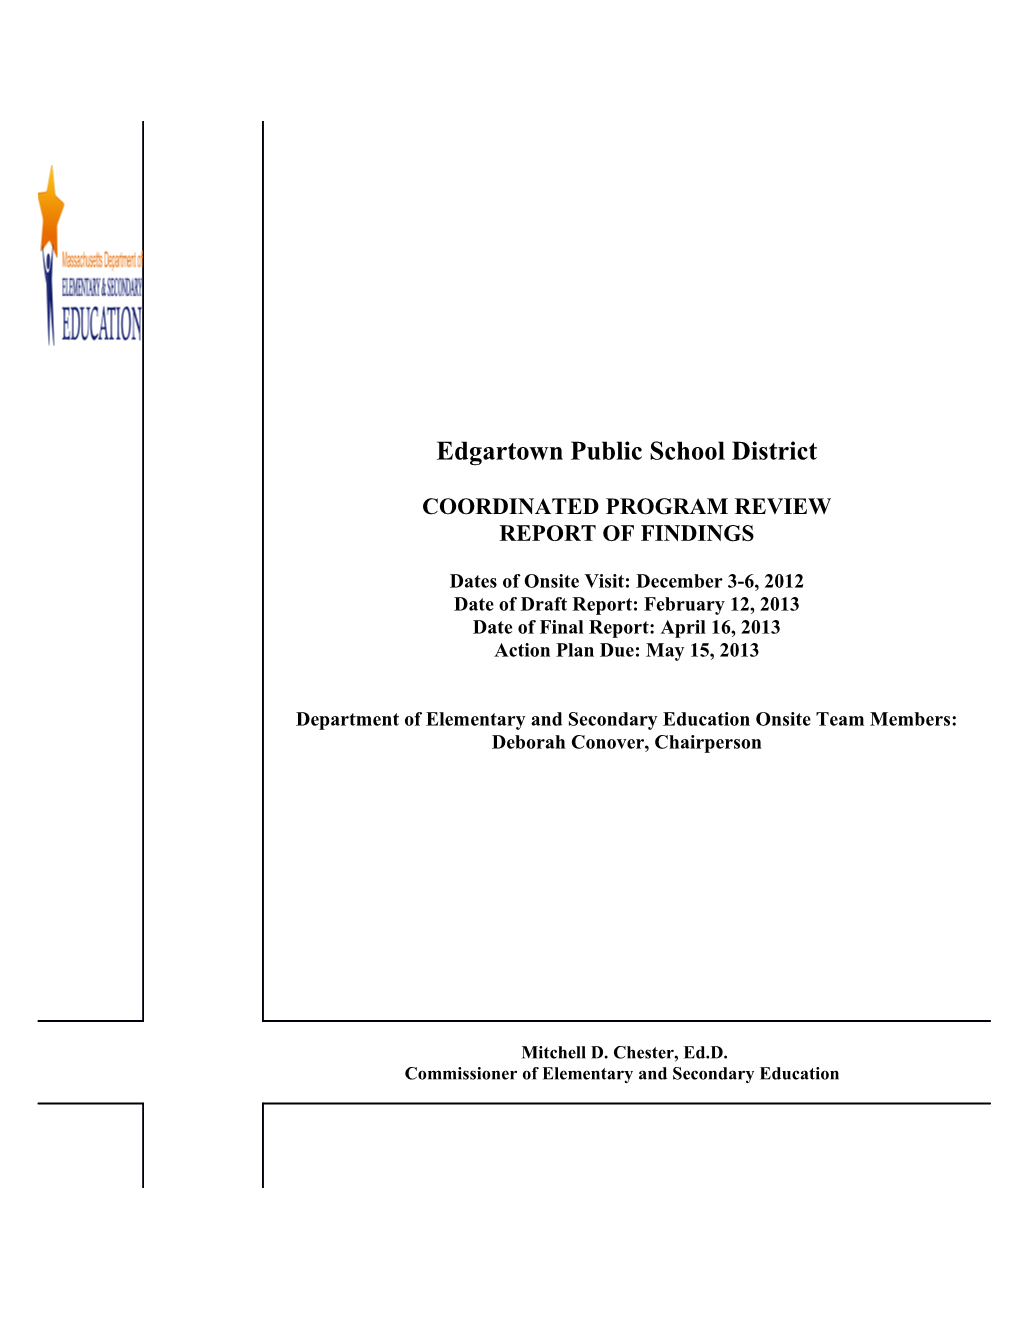 Edgartown Public Schools CPR Final Report 2013